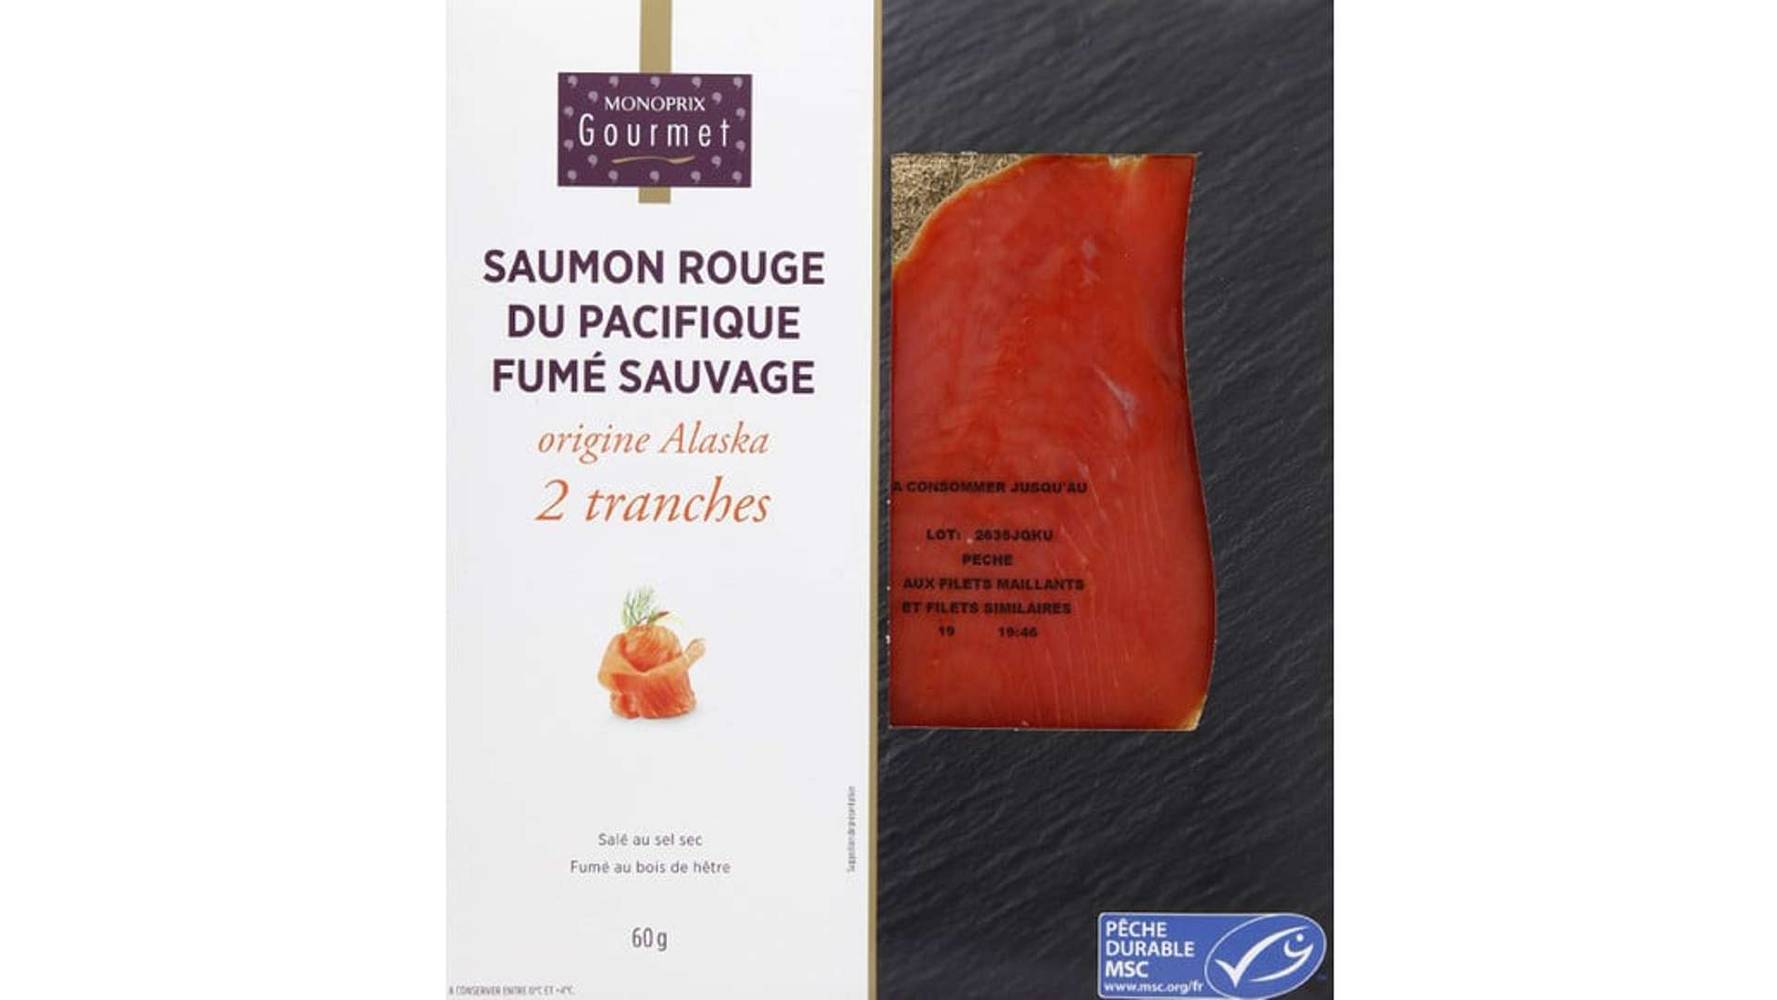 Monoprix Gourmet - Saumon rouge du pacifique fumé sauvage